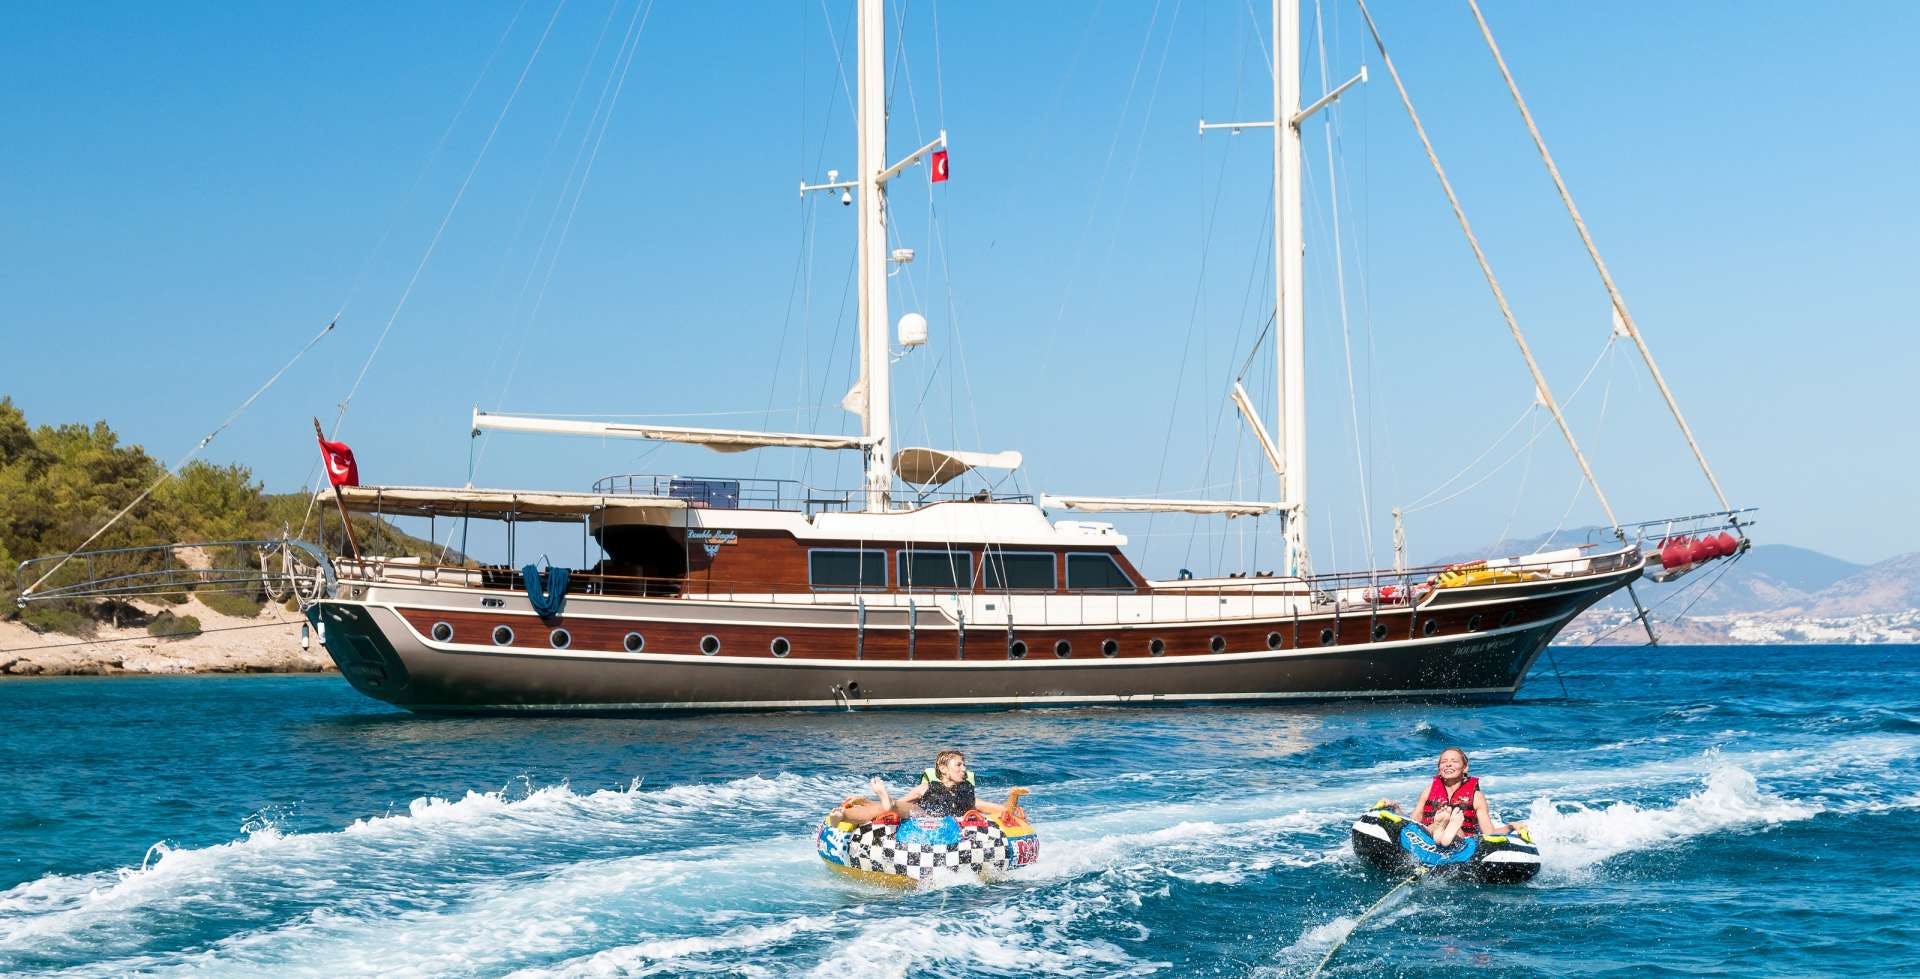 double eagle - Yacht Charter Greece & Boat hire in Greece & Turkey 1